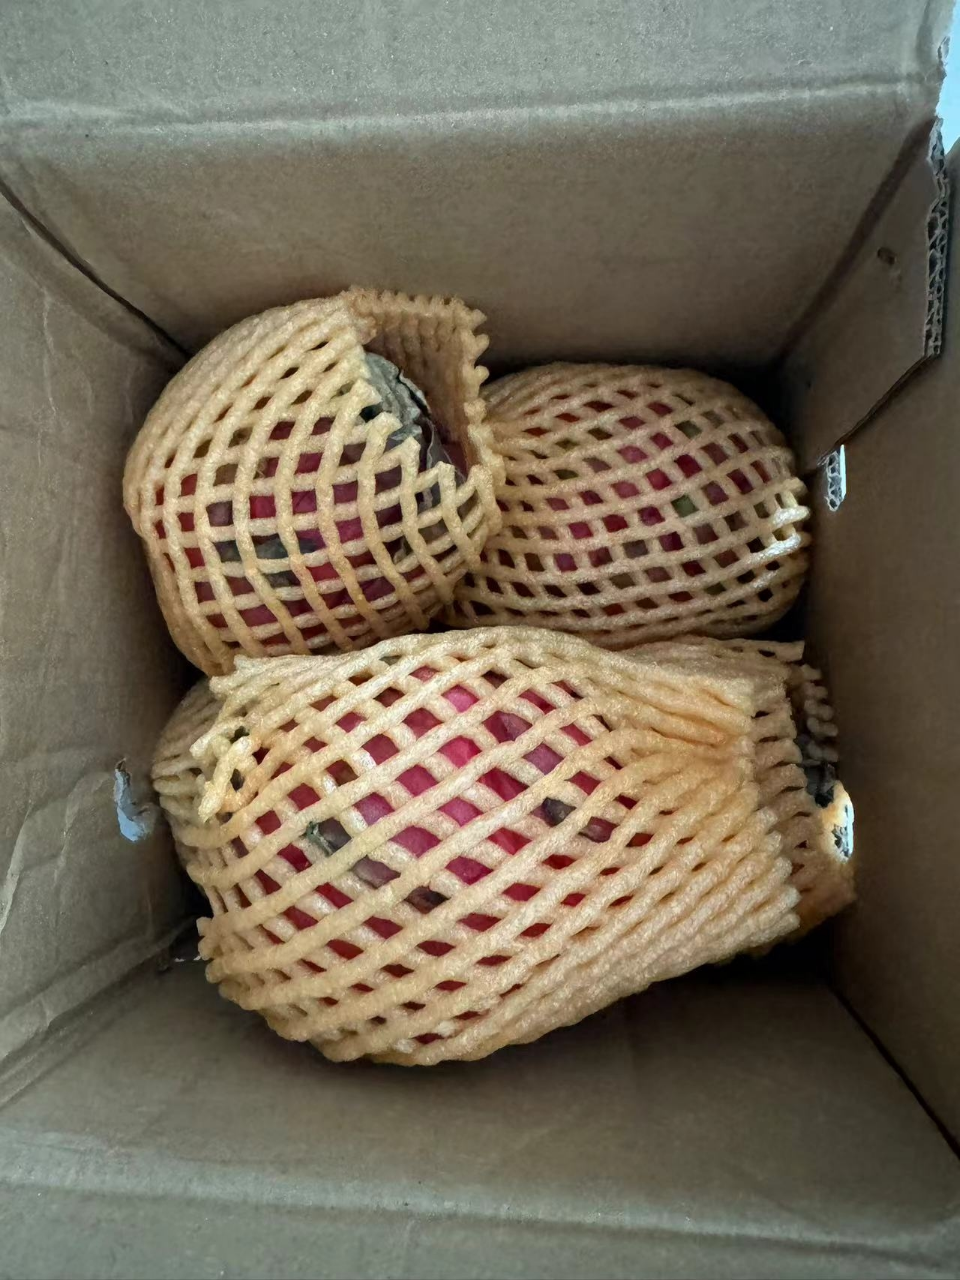 [西沛生鲜] 京都一号红心火龙果 净重2.8-3.2斤 中果 箱装 热带 水果 当季新鲜晒单图